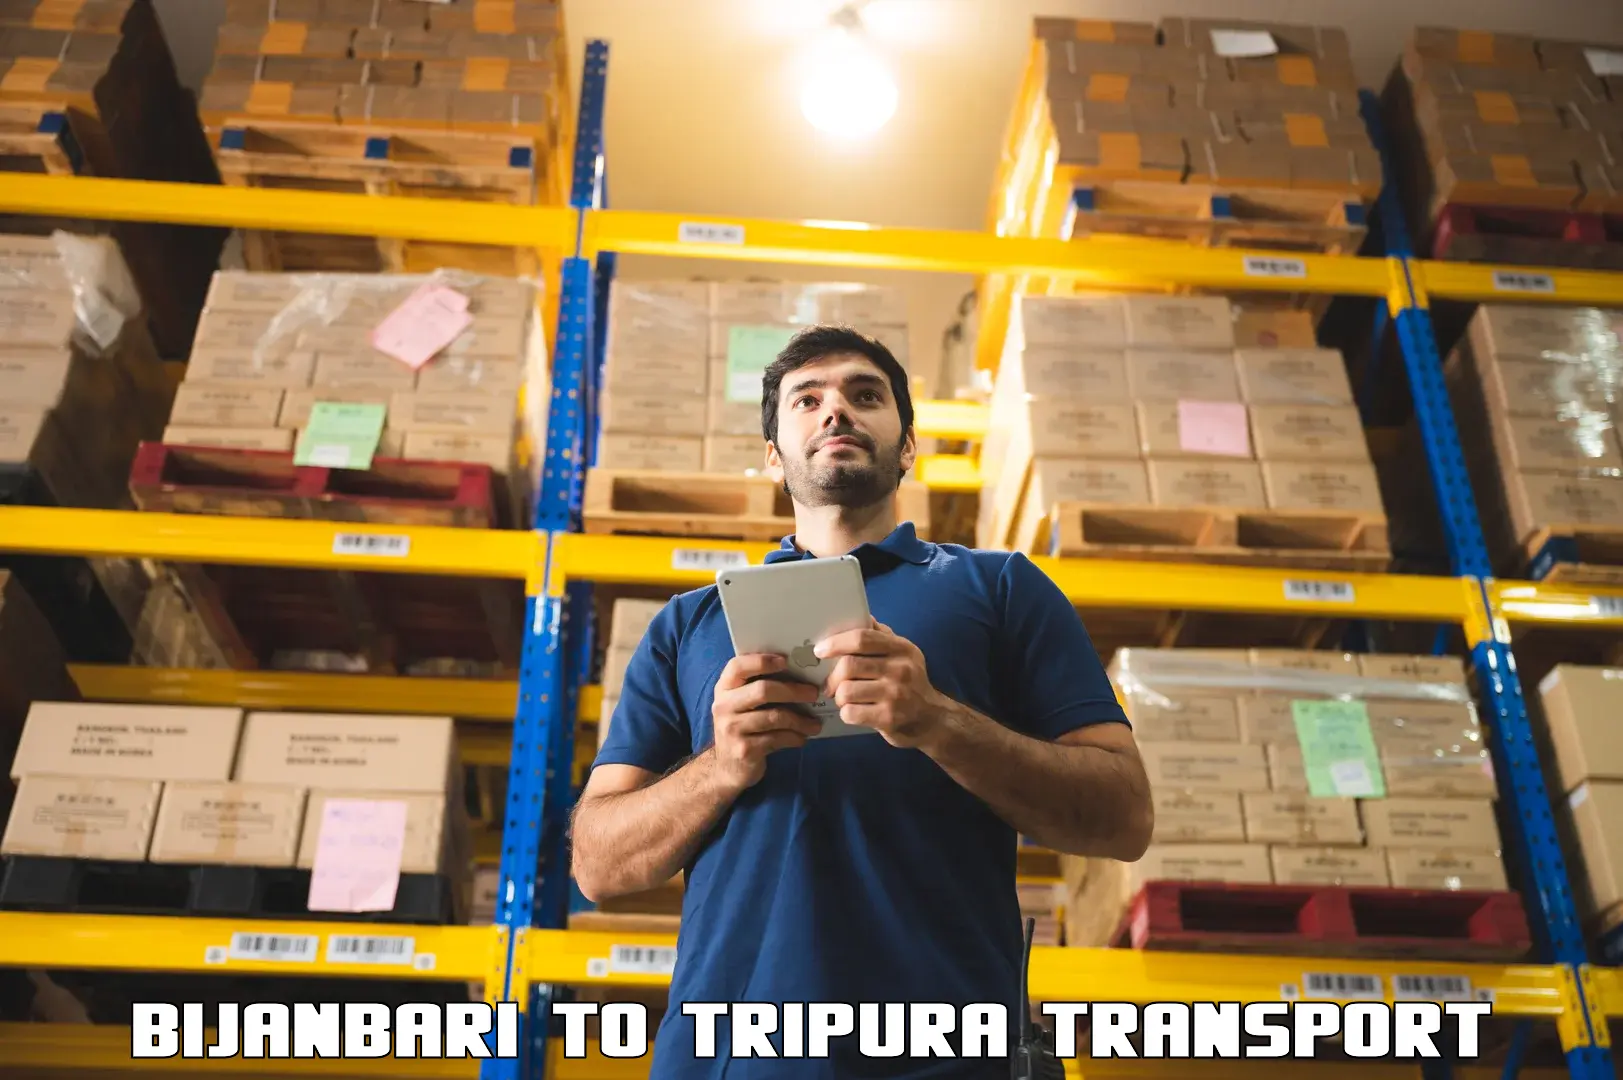 Furniture transport service Bijanbari to Kamalpur